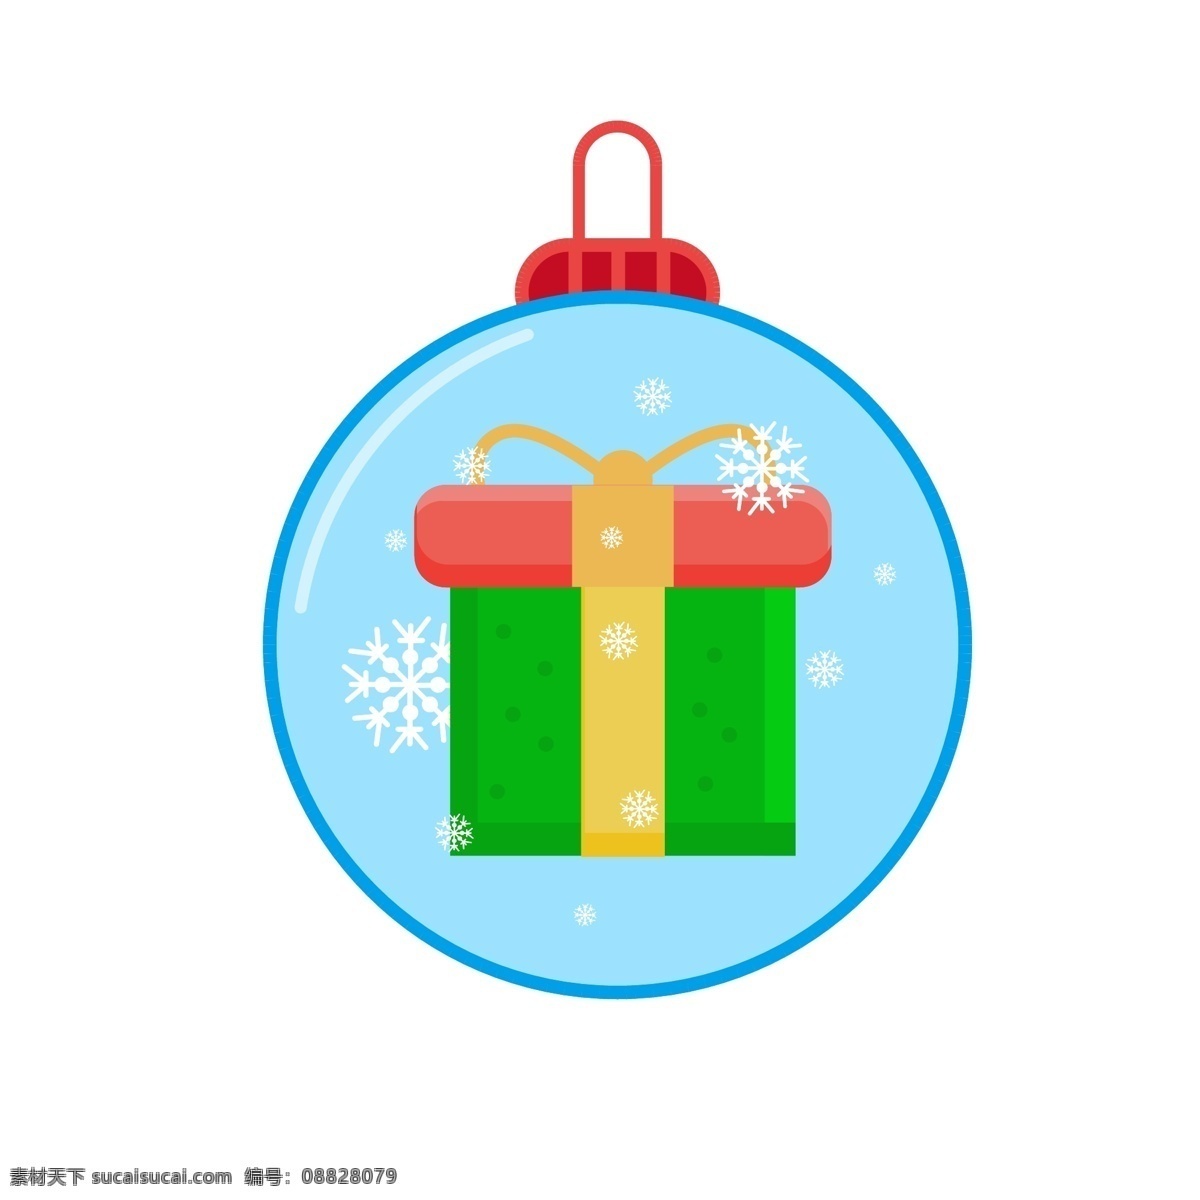 圣诞节 元素 装饰 图标 雪人 蝴蝶结 铃铛 雪花 装饰图标 礼物